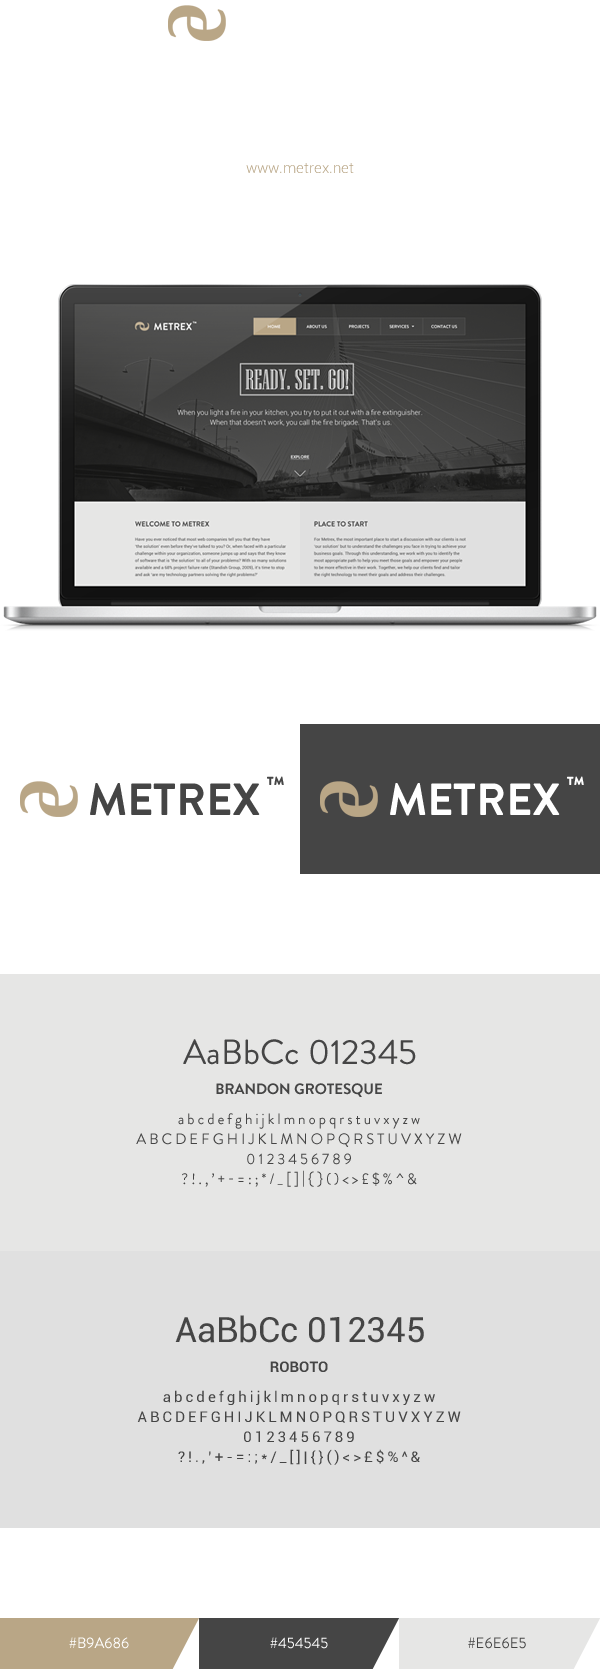 Metrex Systems Inc clean design redesign dark grey gold